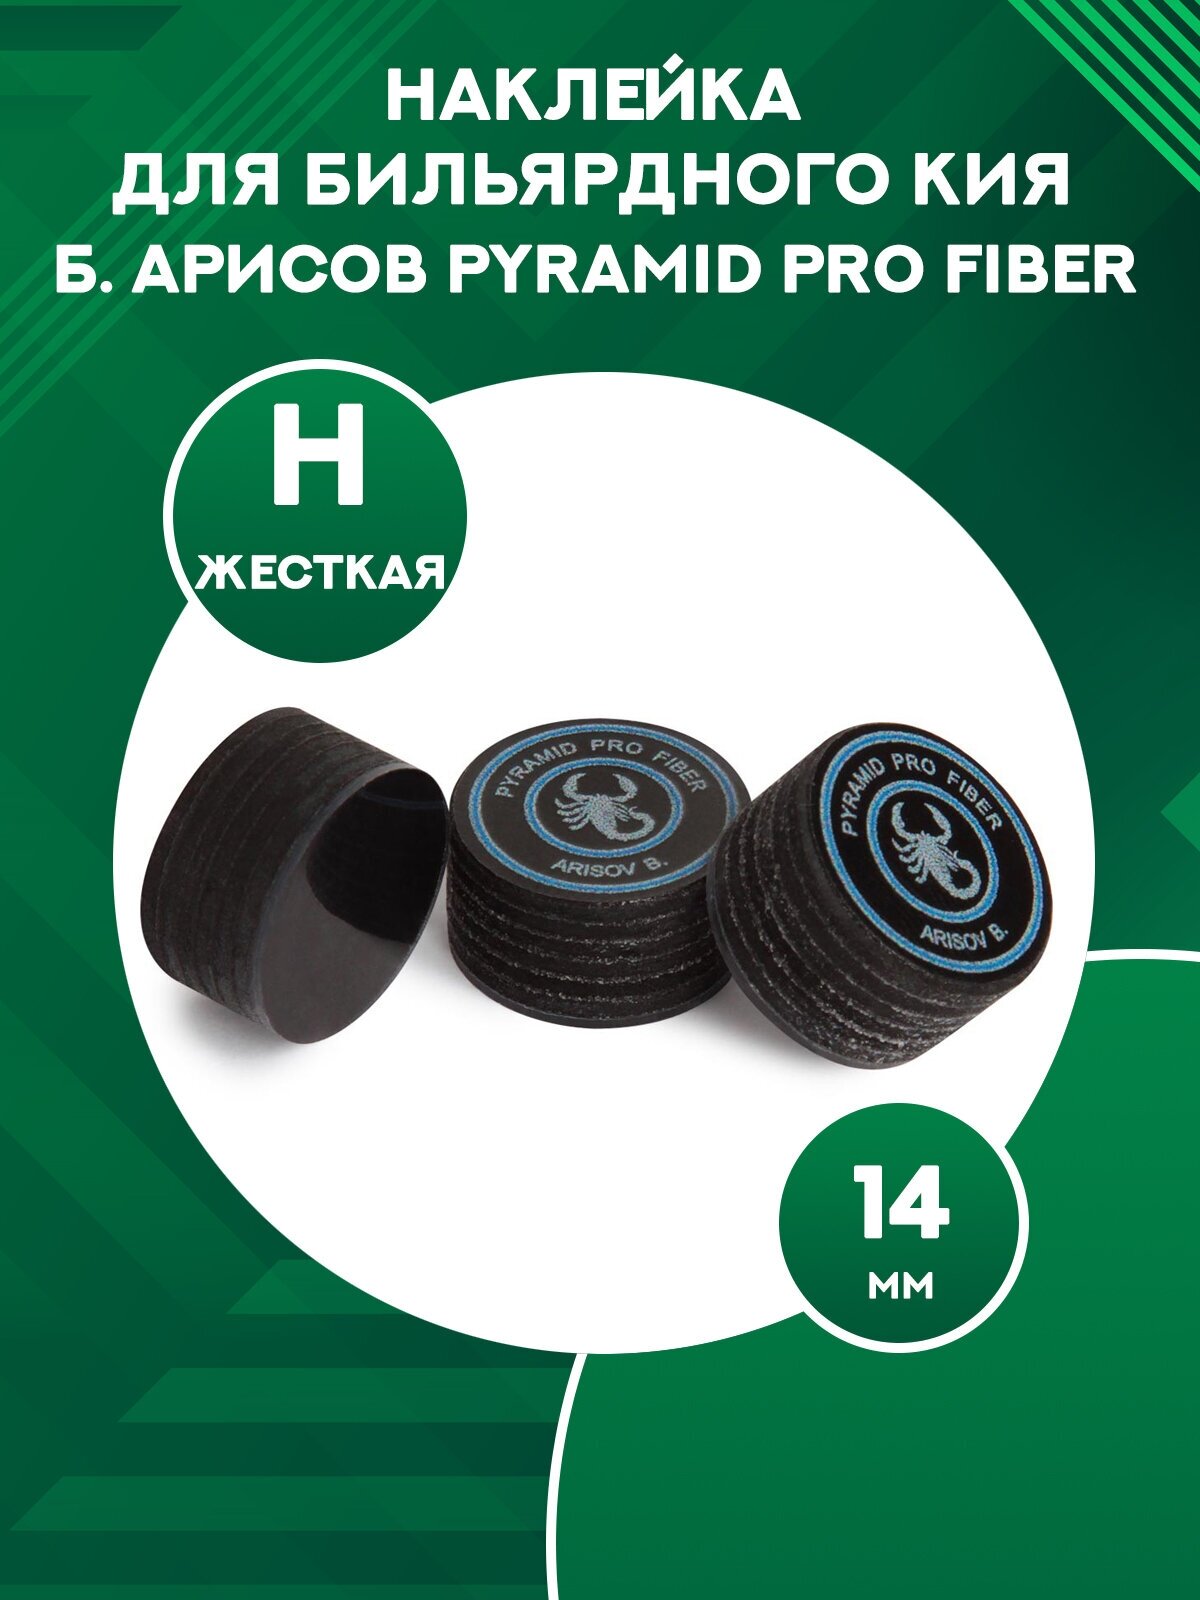 Наклейка для бильярдного кия многослойная Б. Арисова Pyramid Pro Fiber 14 мм H 1 шт.